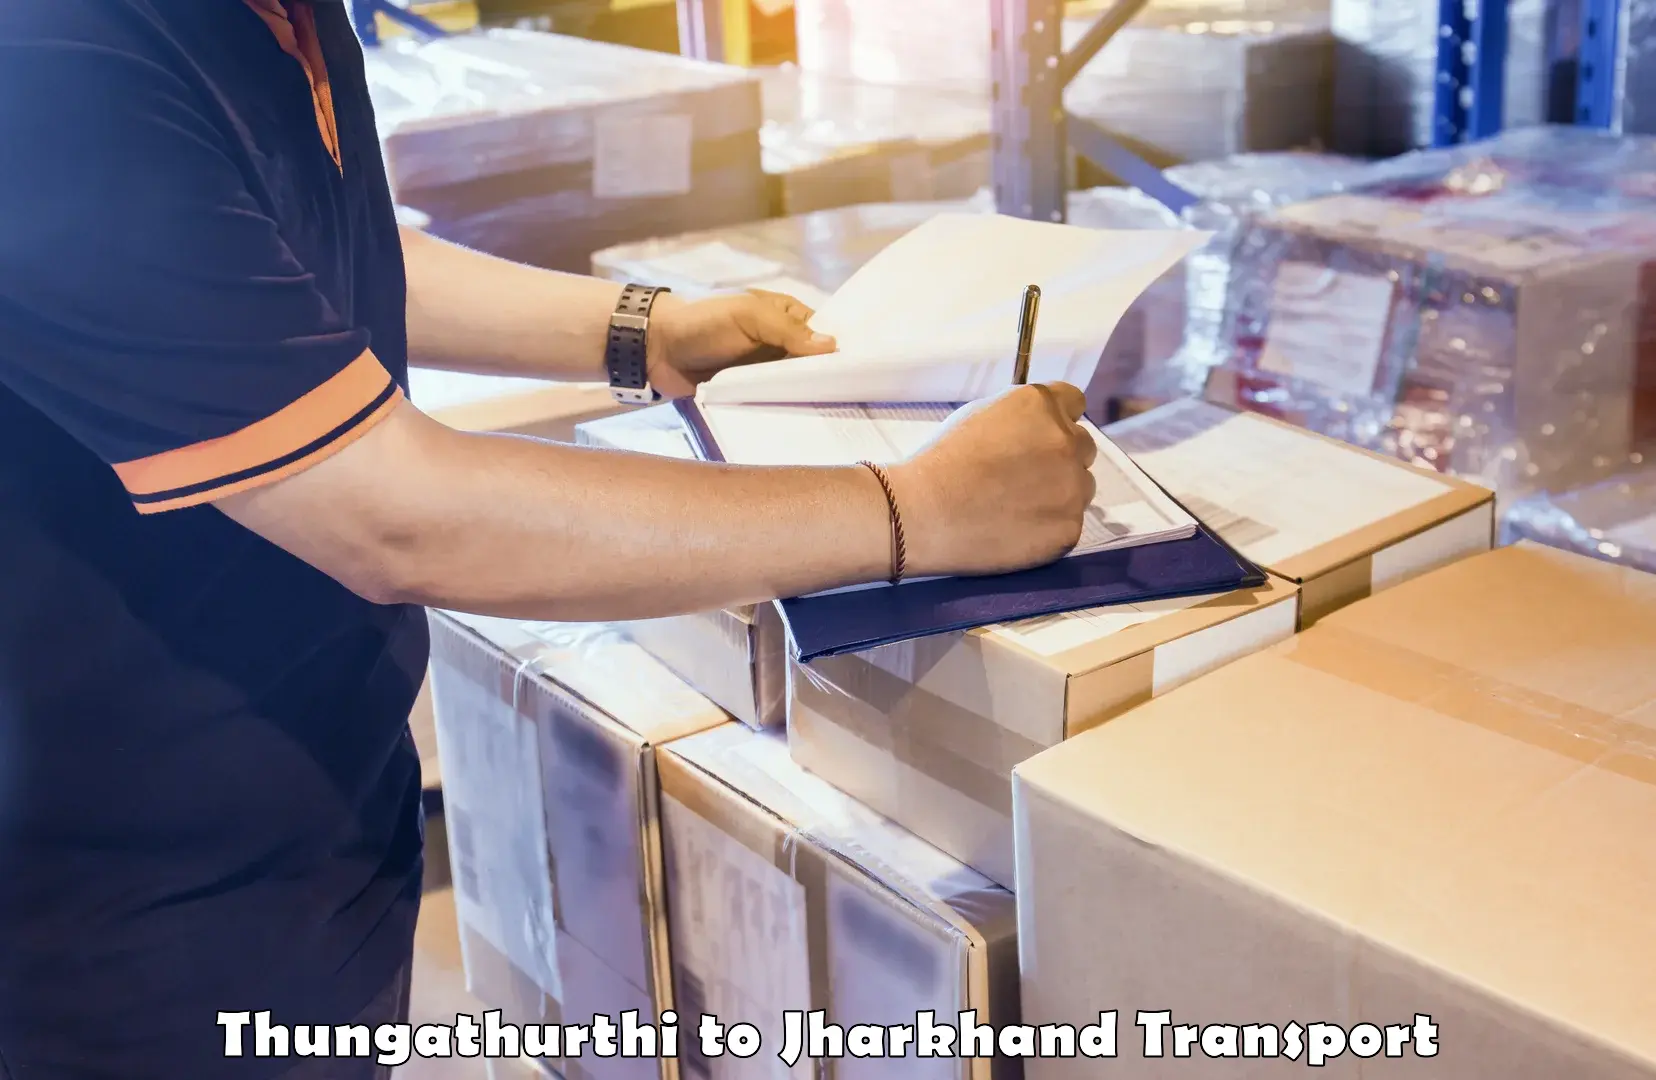 Domestic goods transportation services Thungathurthi to Godabar Chatra